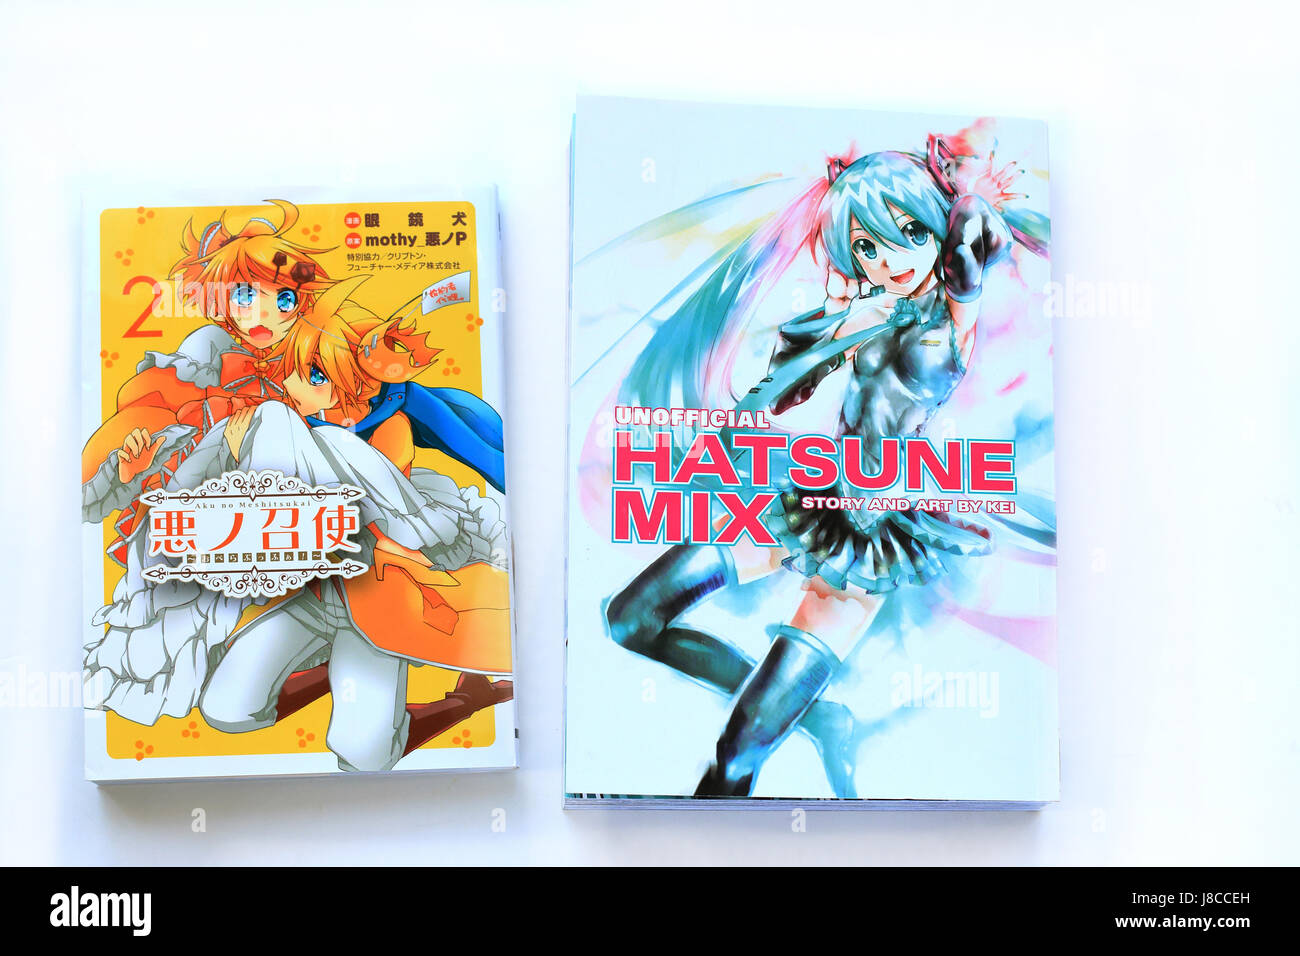 Anime giapponese di libri di fumetti - Hatsune Mix libro - Storia e Arte da Kei Foto Stock